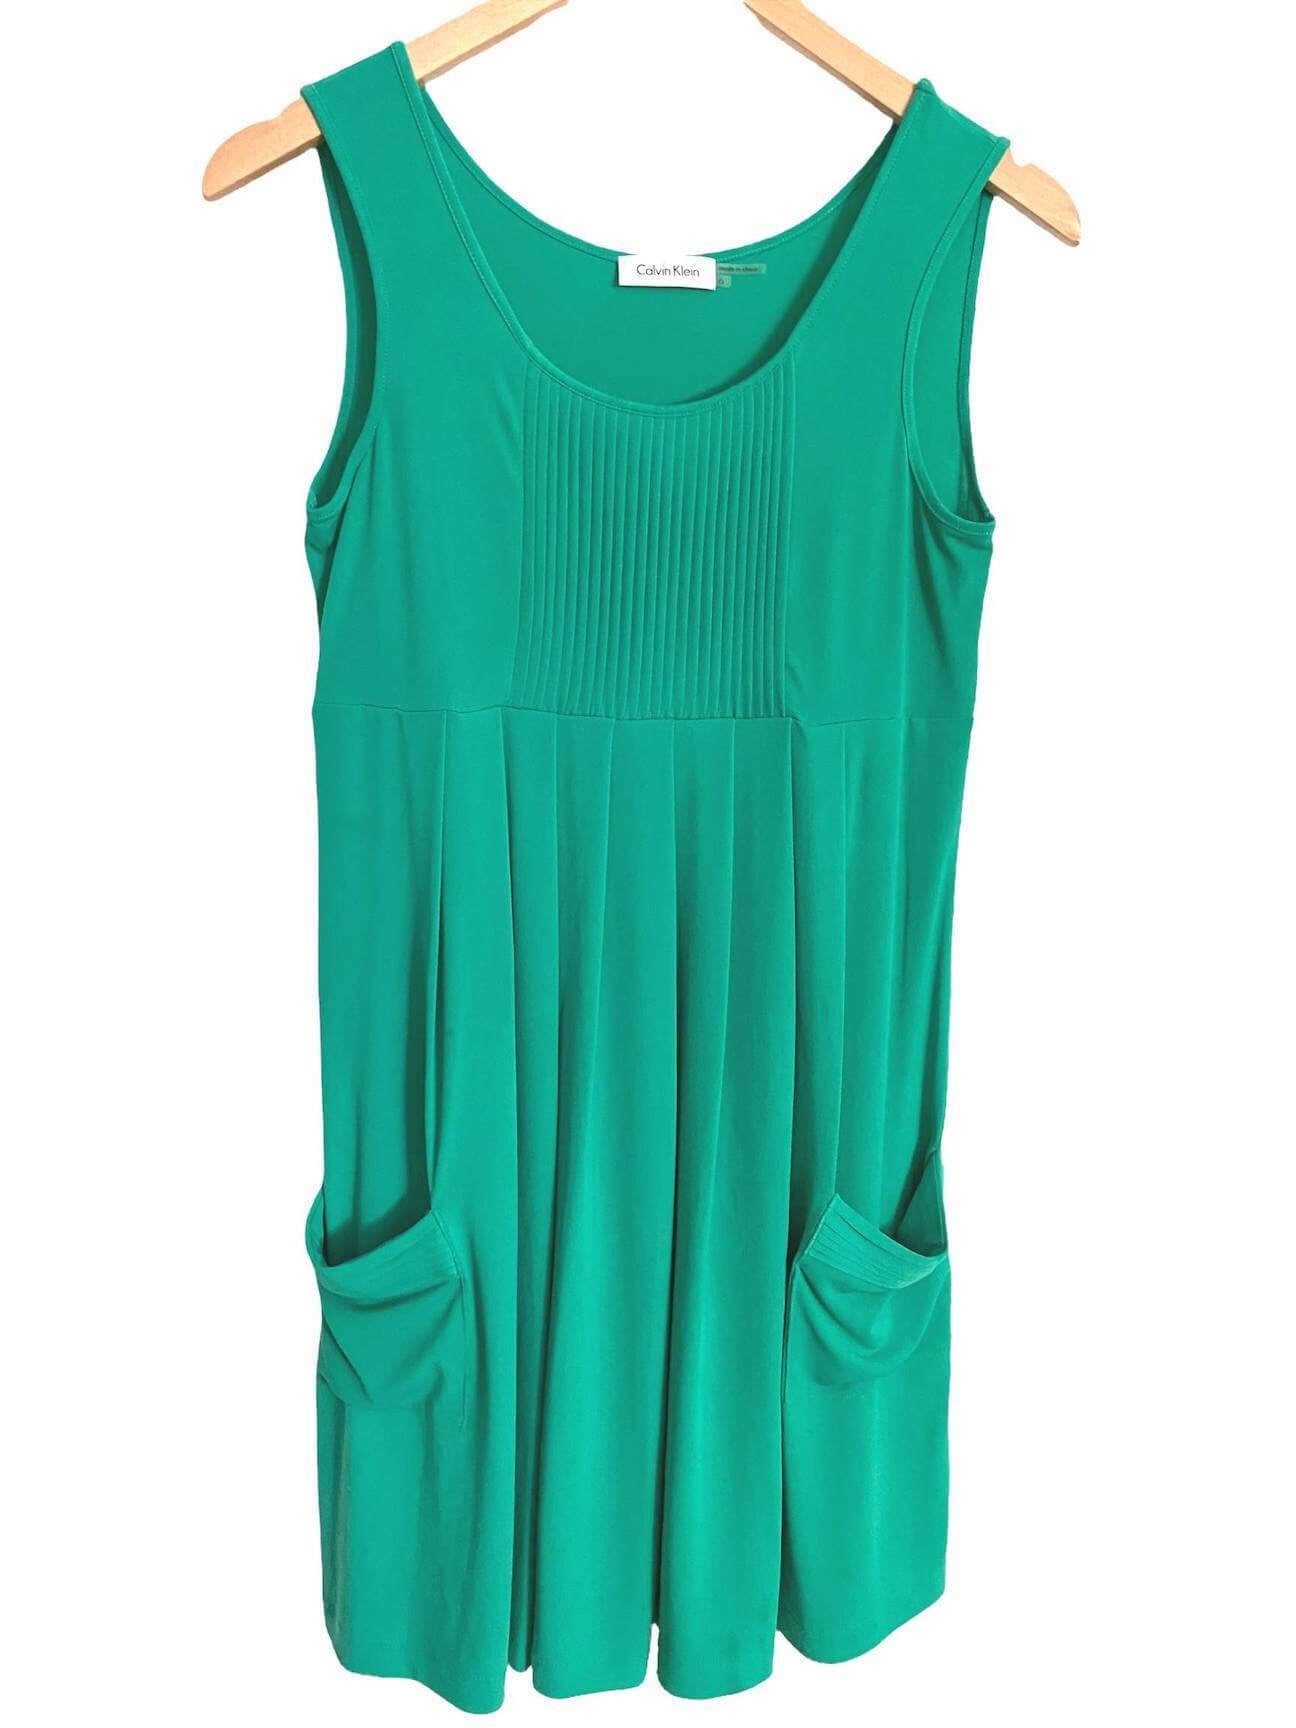 Light Summer Aqua Pleated Knit Dress